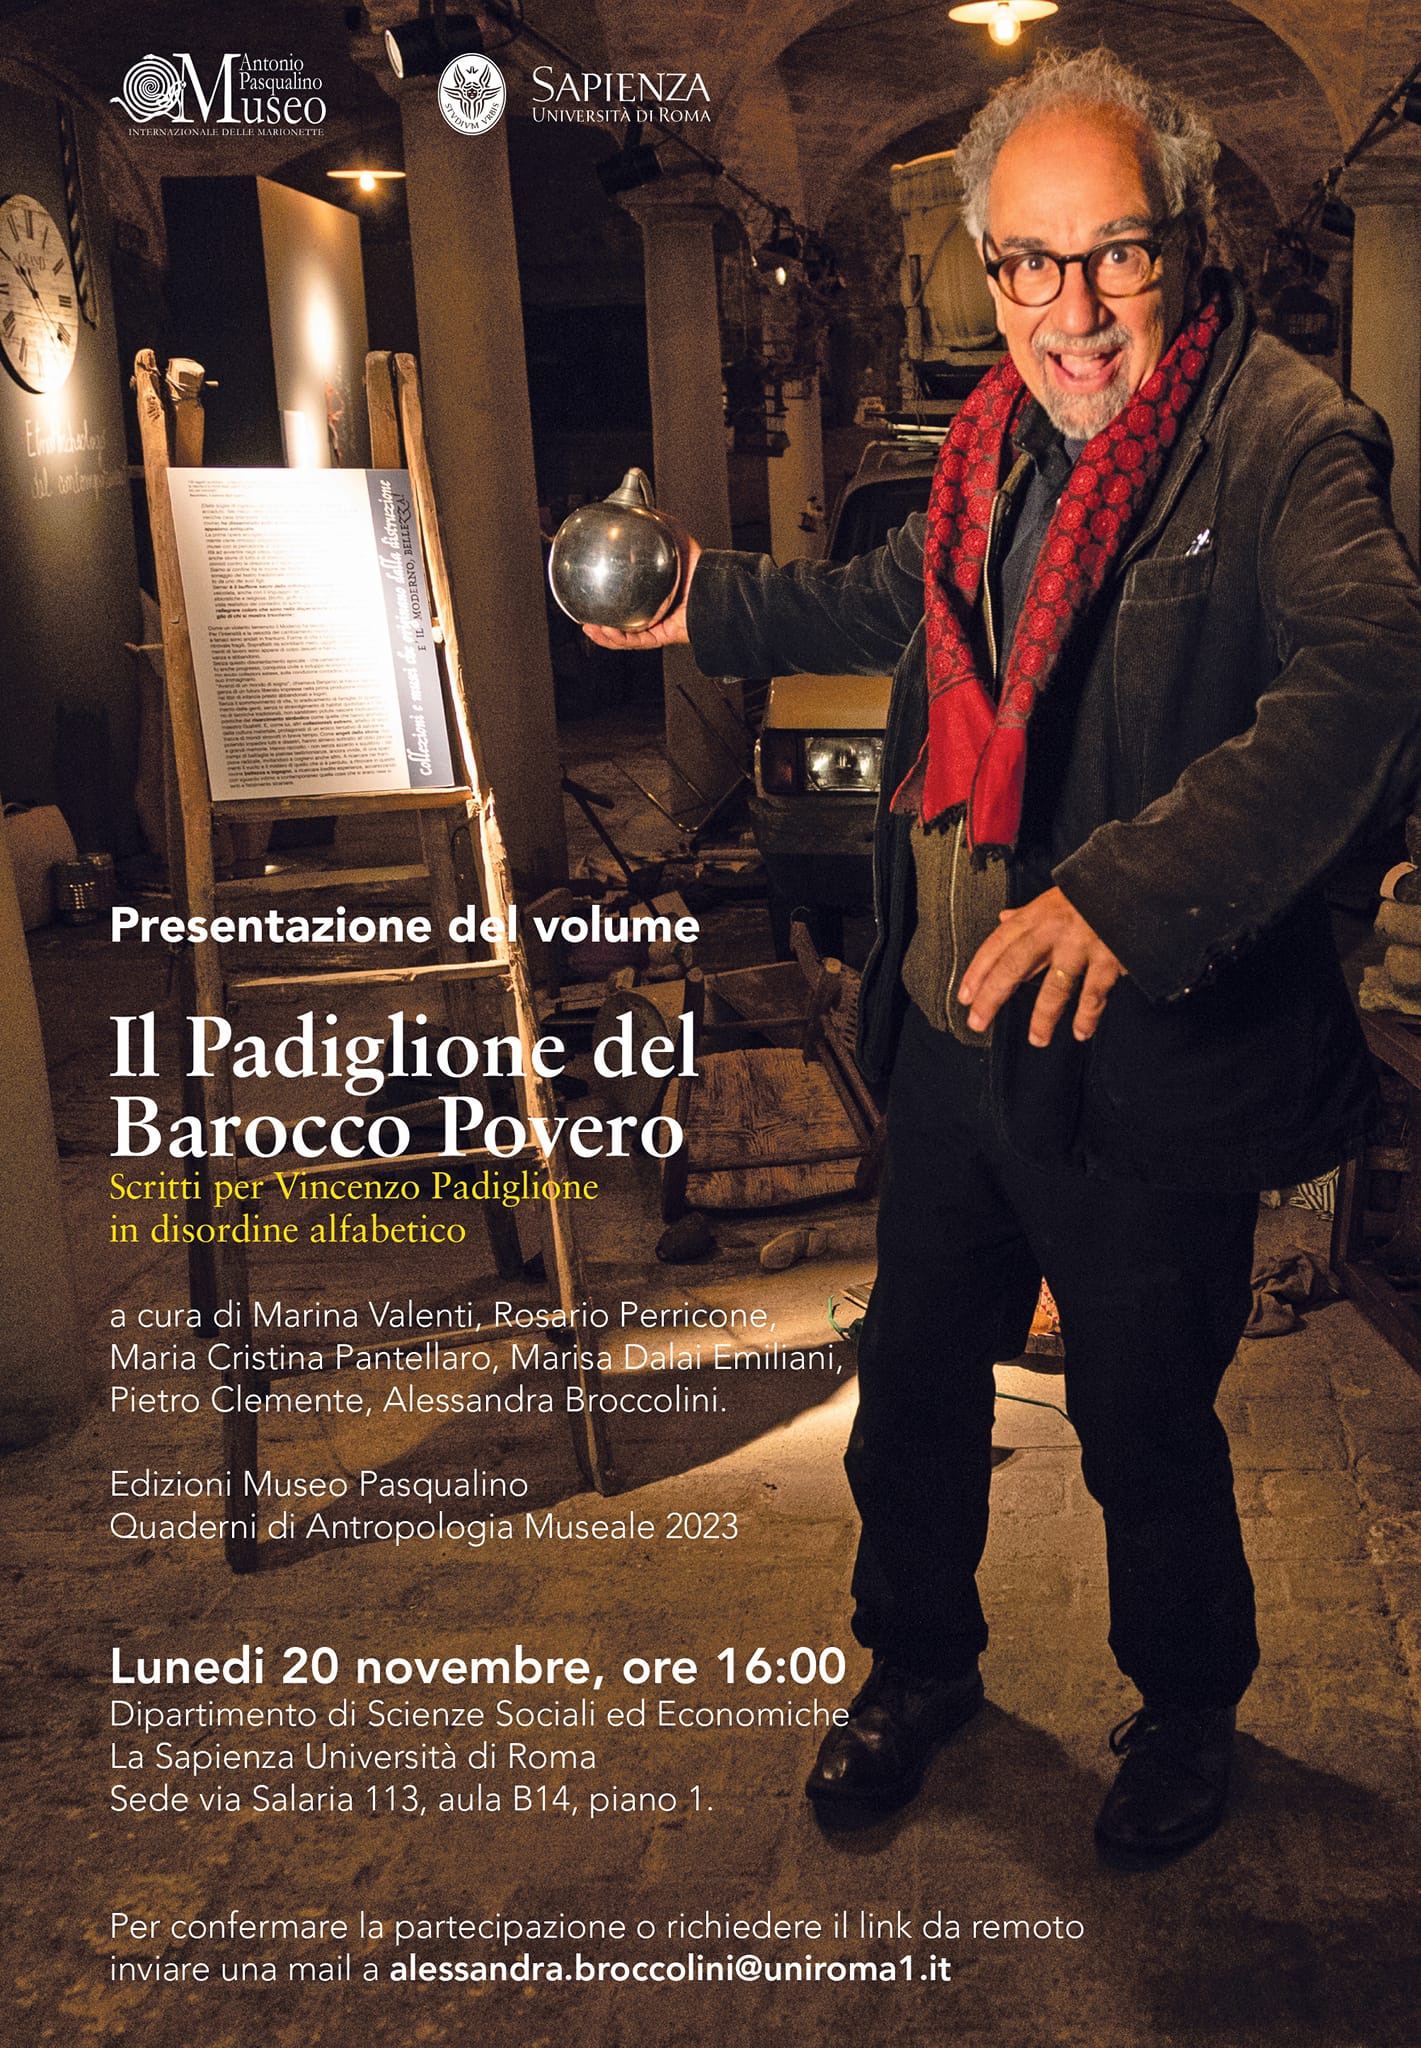 Il Padiglione del Barocco Povero, presentazione del 20 novembre 2023